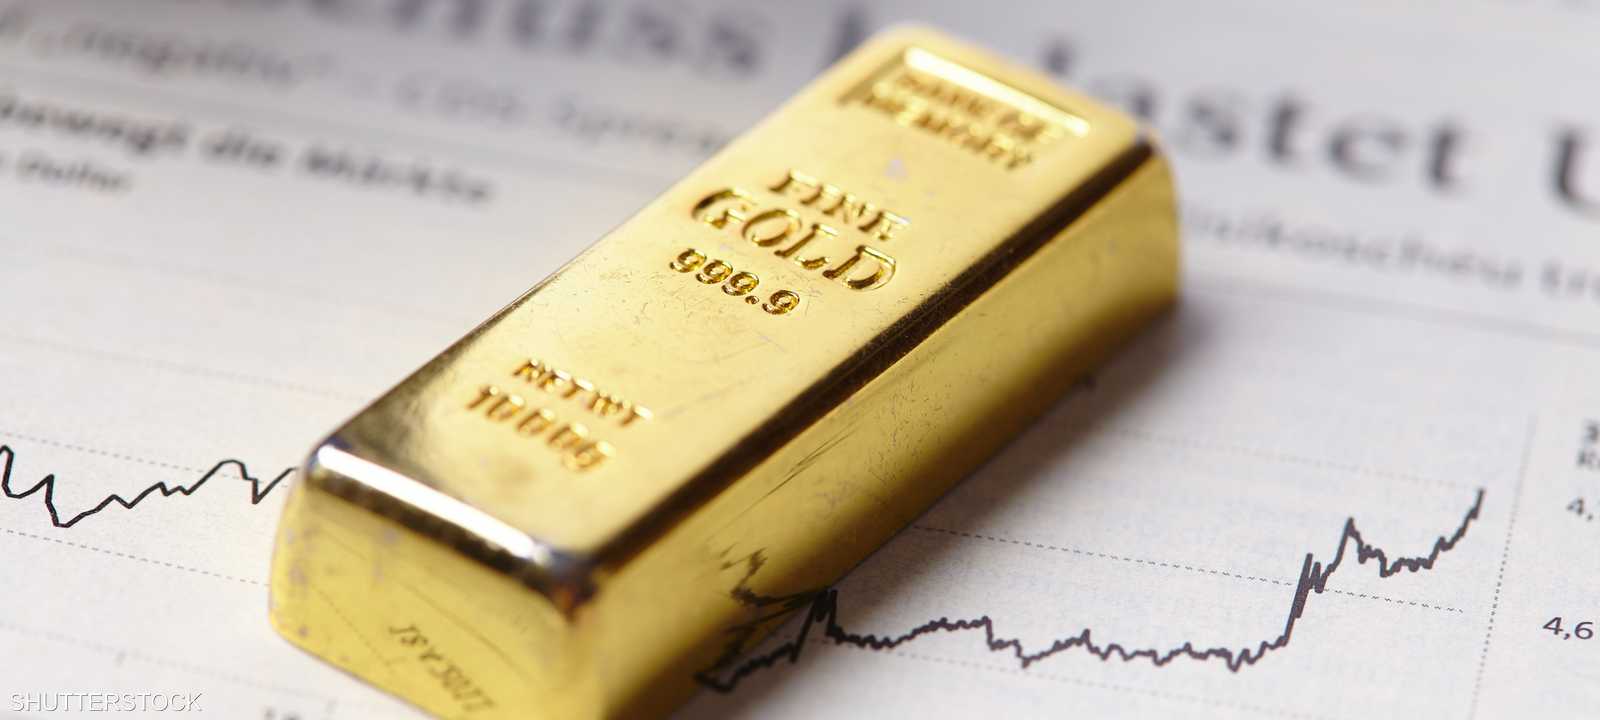 الذهب يلامس أعلى مستوى على الإطلاق بعد بيانات أميركية أنعشت